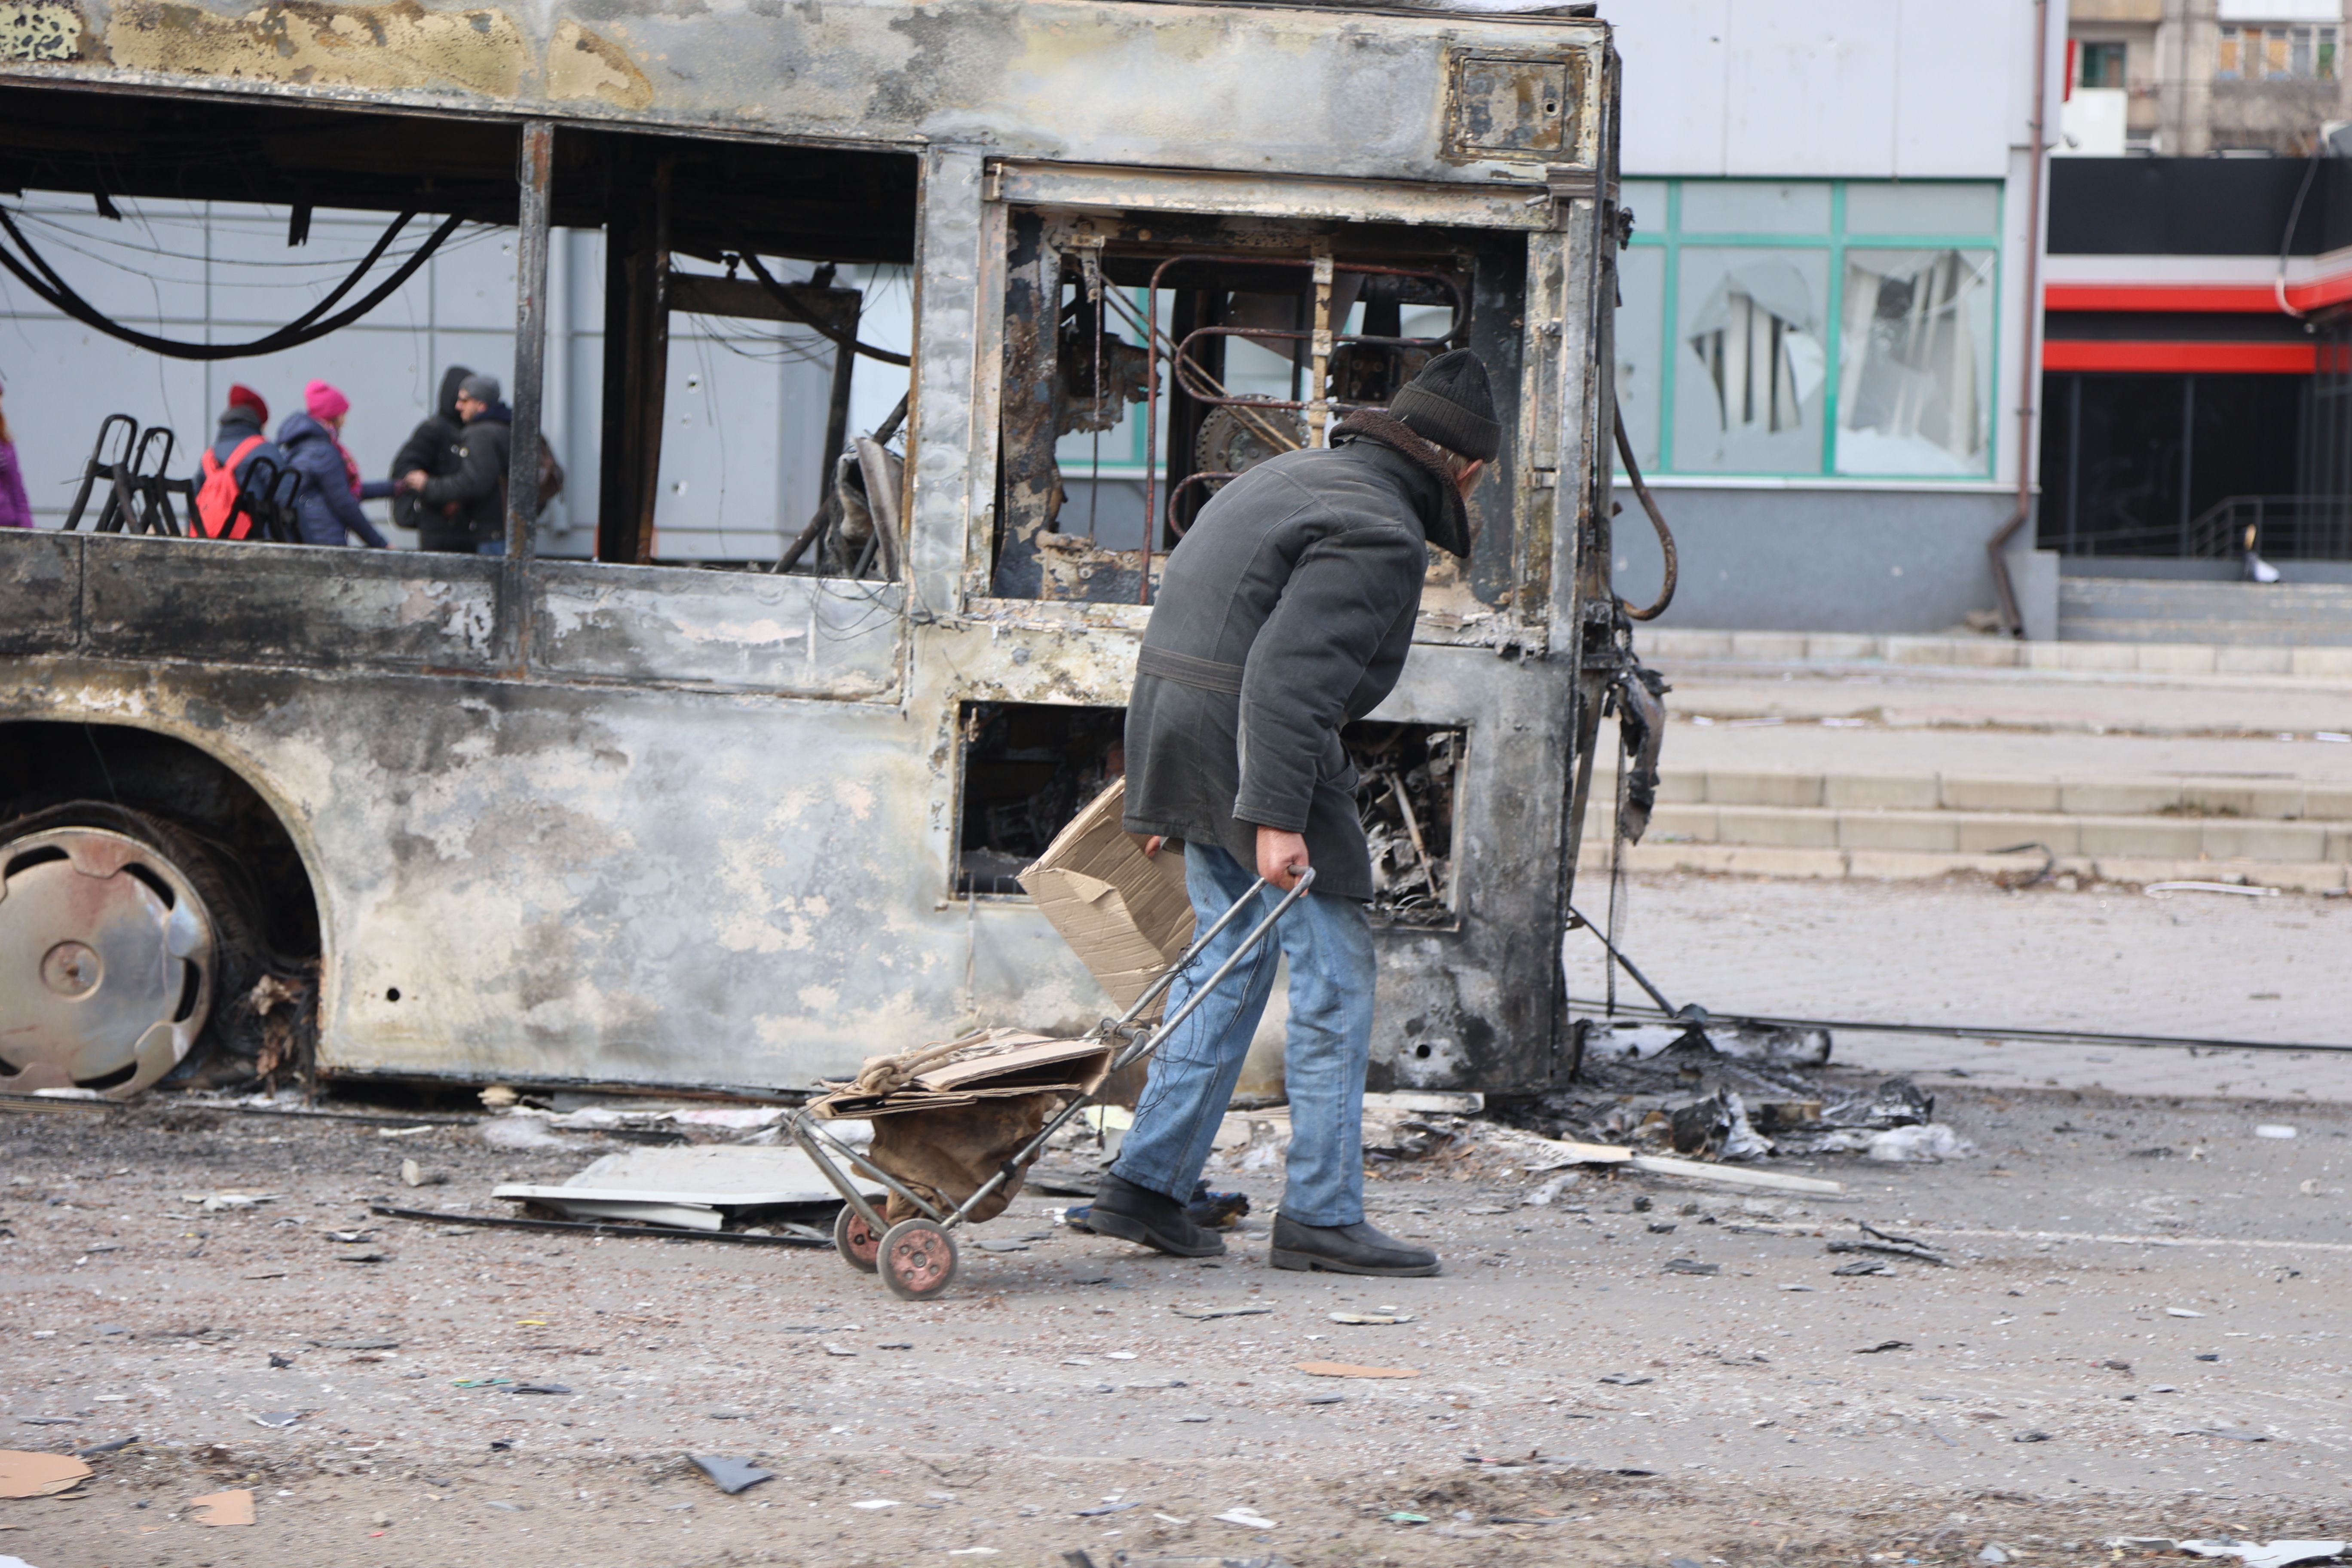 Megsérült épületek és járművek képei az orosz hadsereg és az oroszbarát szakadárok irányítása alatt álló ukrán város Mariupol március 29-i bombázása után.